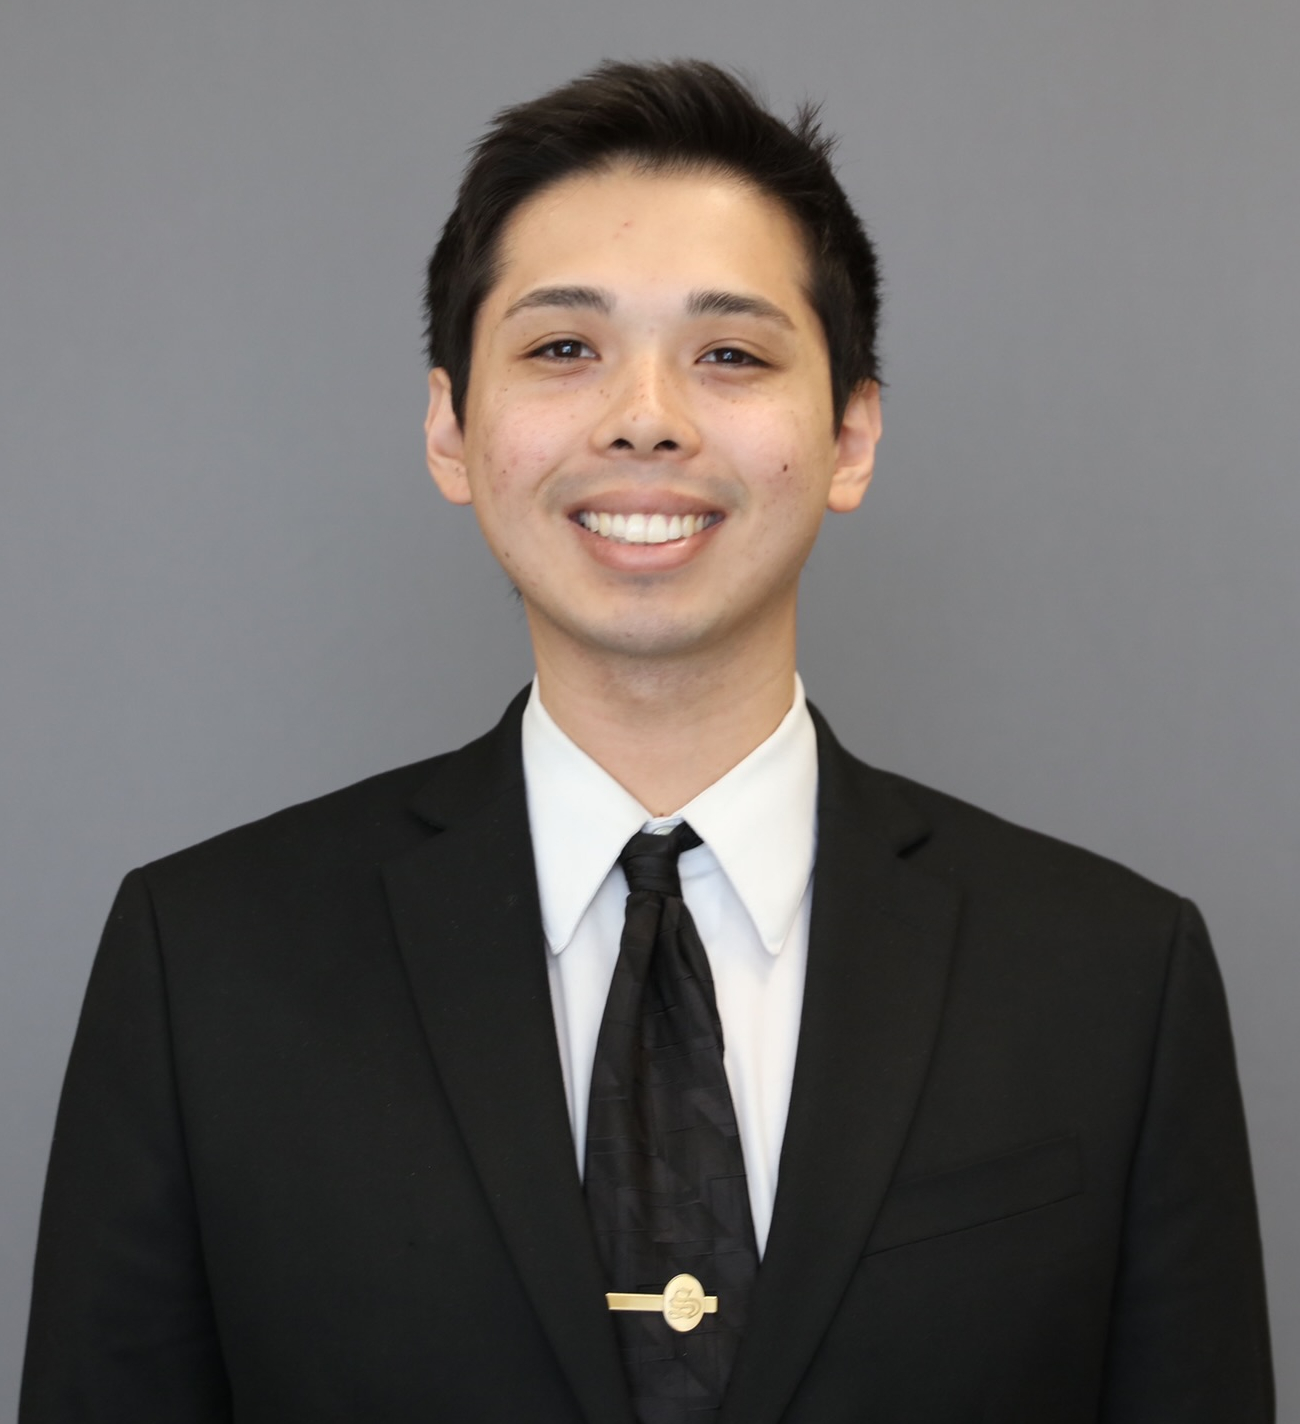 Porträt lächelnder Mann, kurze, schwarze Haare, weißes Hemd, schwarzes Sakko, schwarze Krawatte